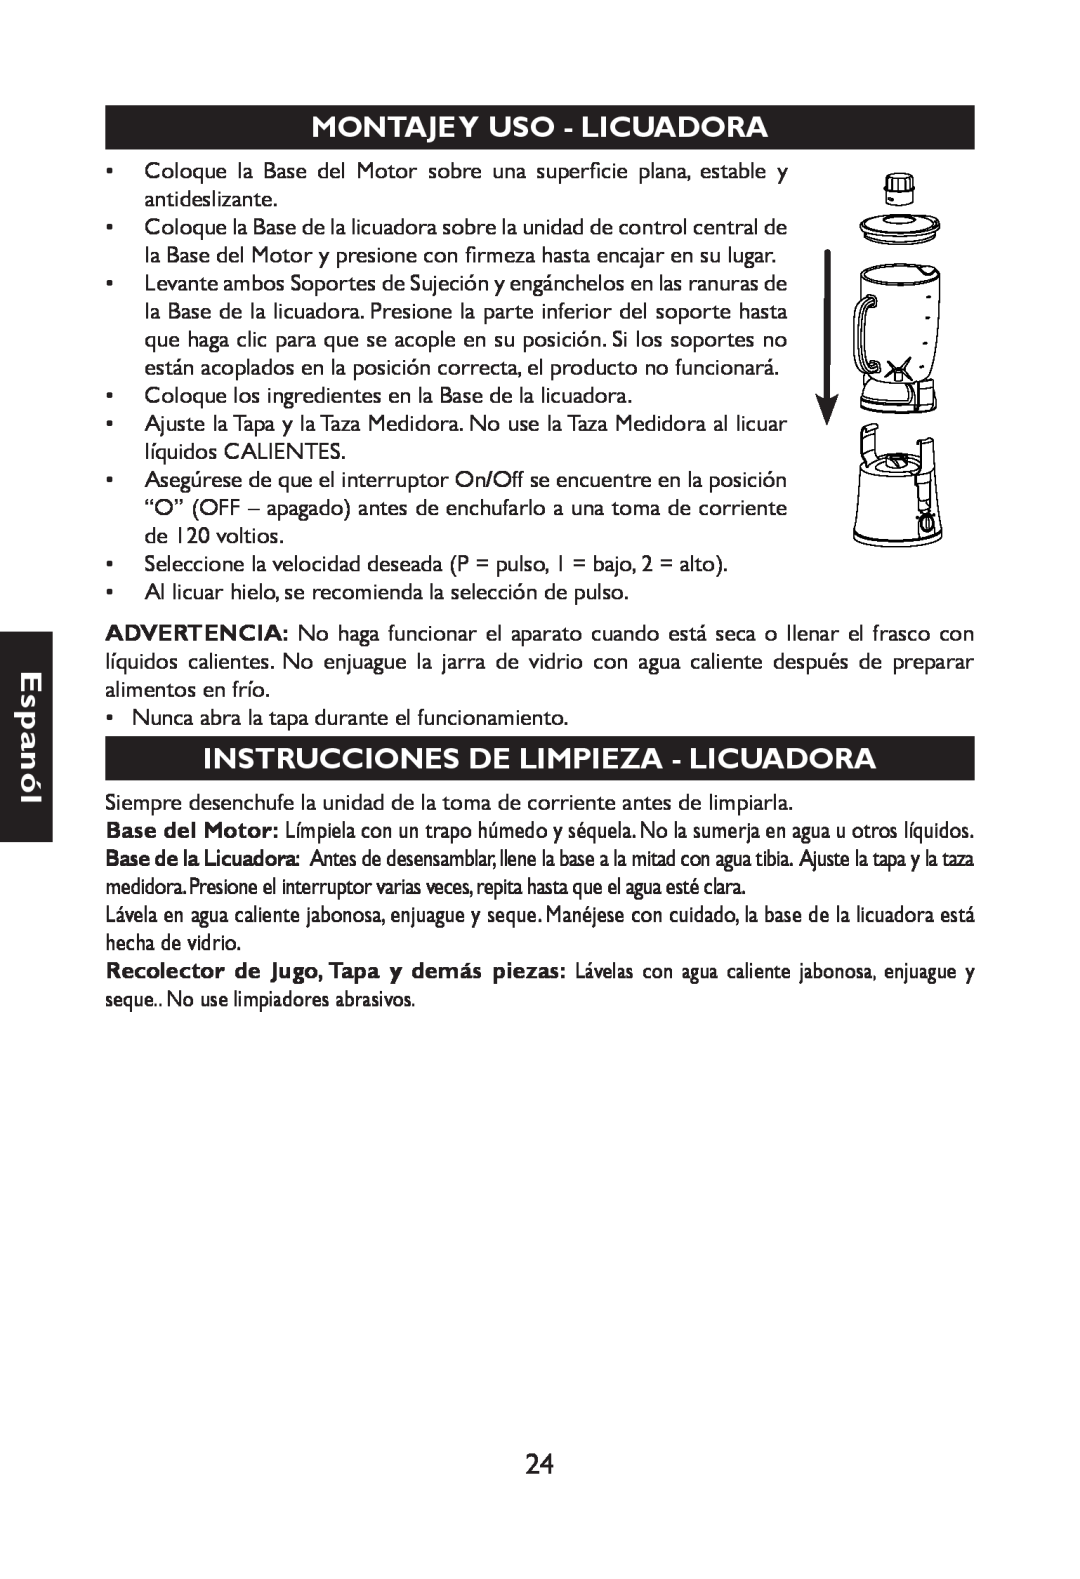 Nesco JB-50 manual Montajey Uso -Licuadora, Instrucciones Delimpieza -Licuadora, Espanól 